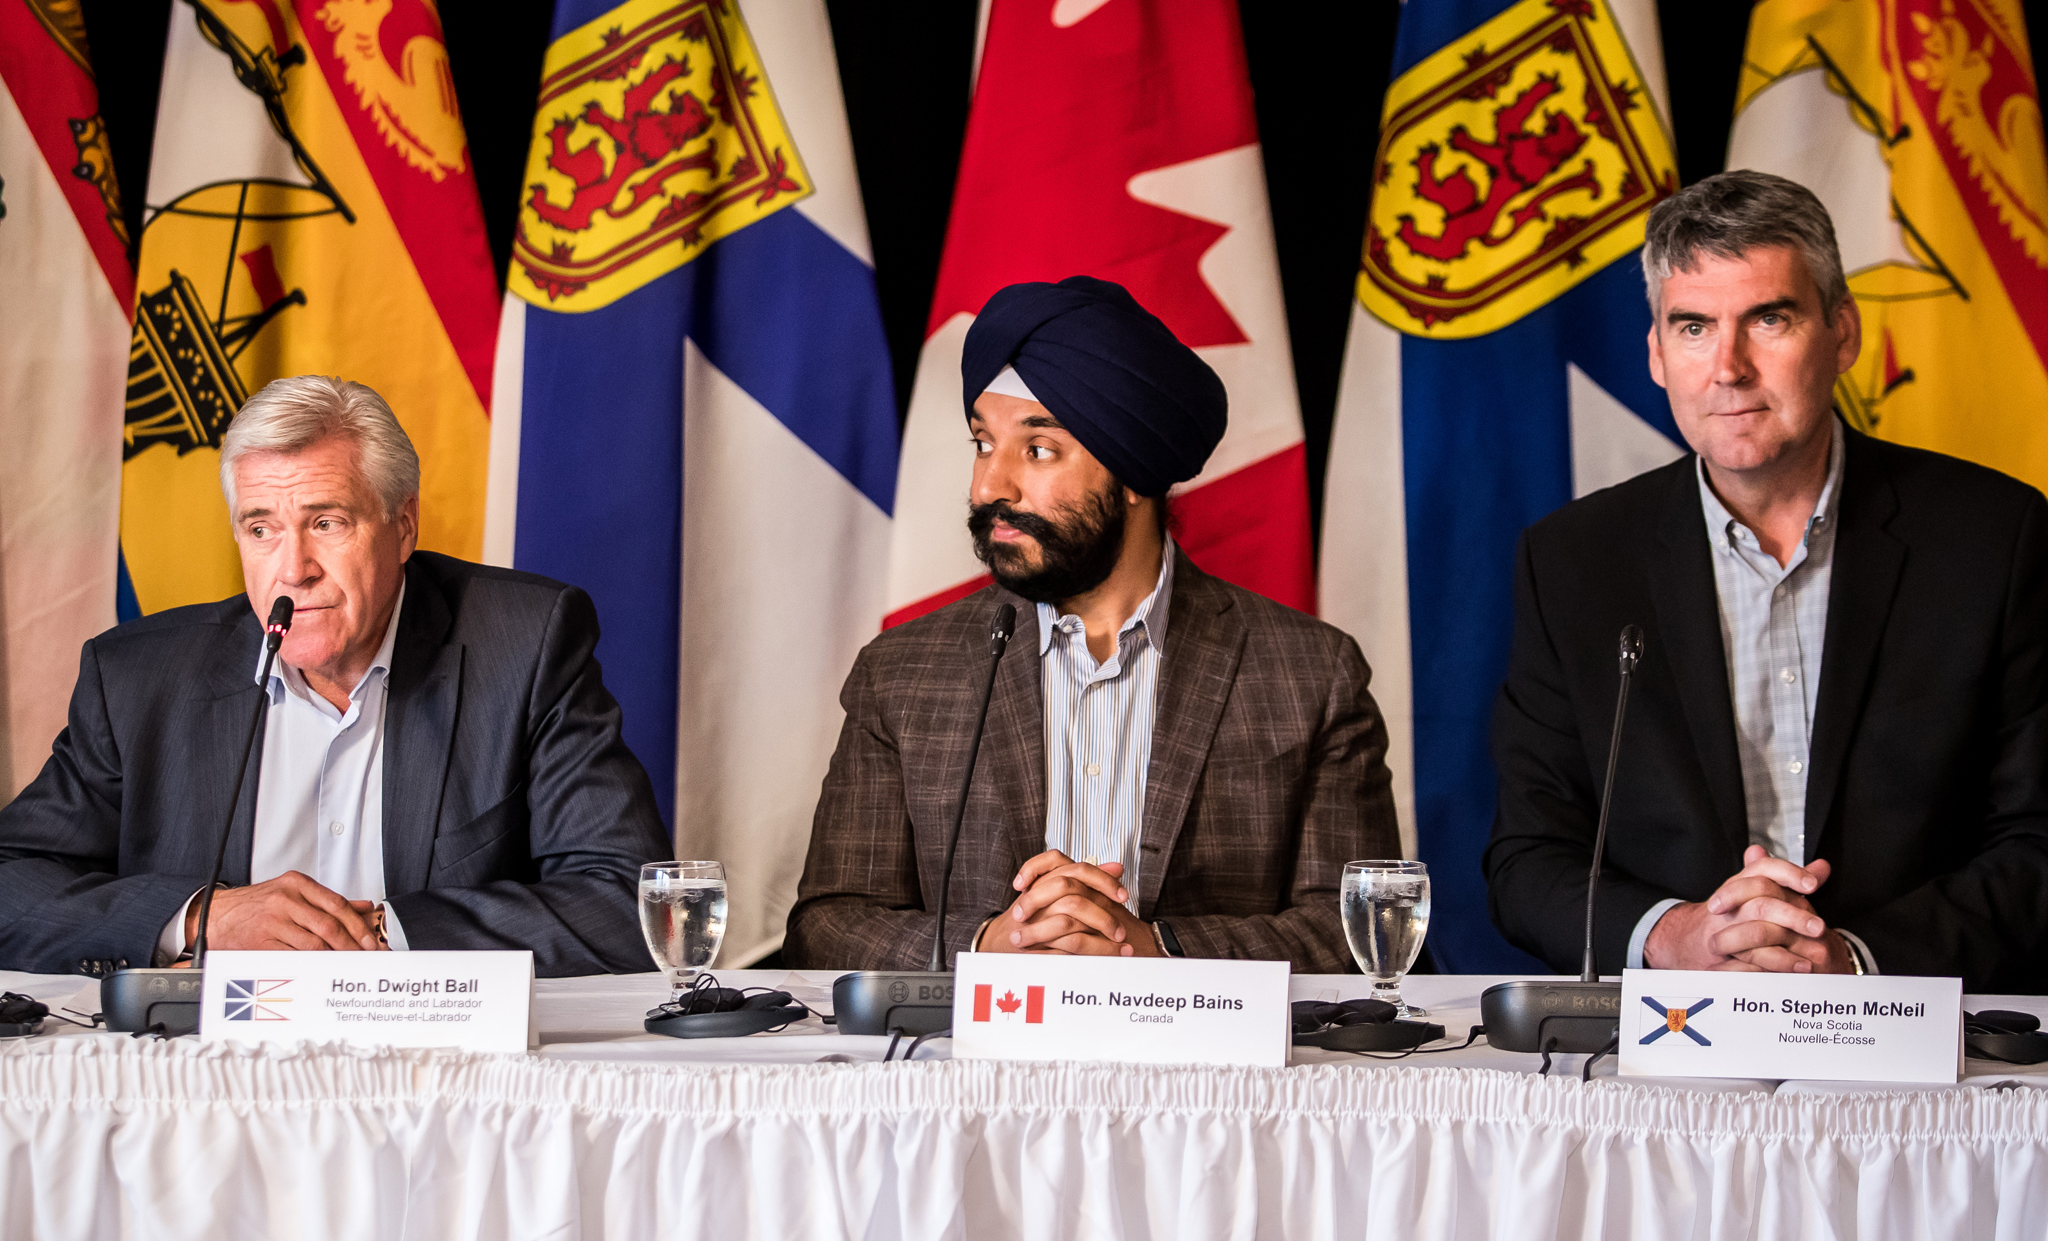 Le 11 juillet 2017 - Le premier ministre de Terre-Neuve-et-Labrador Dwight Ball, le ministre de l'Innovation, des Sciences et du Développement économique et ministre responsable de l'APECA Navdeep Bains, et le premier ministre de la Nouvelle-écosse Stephen McNeil répondent aux questions des médias à la conférence de presse du 11 juillet 2017 sur la Stratégie de croissance pour l'Atlantique qui a eu lieu à Humber Valley (T.-N.-L.).